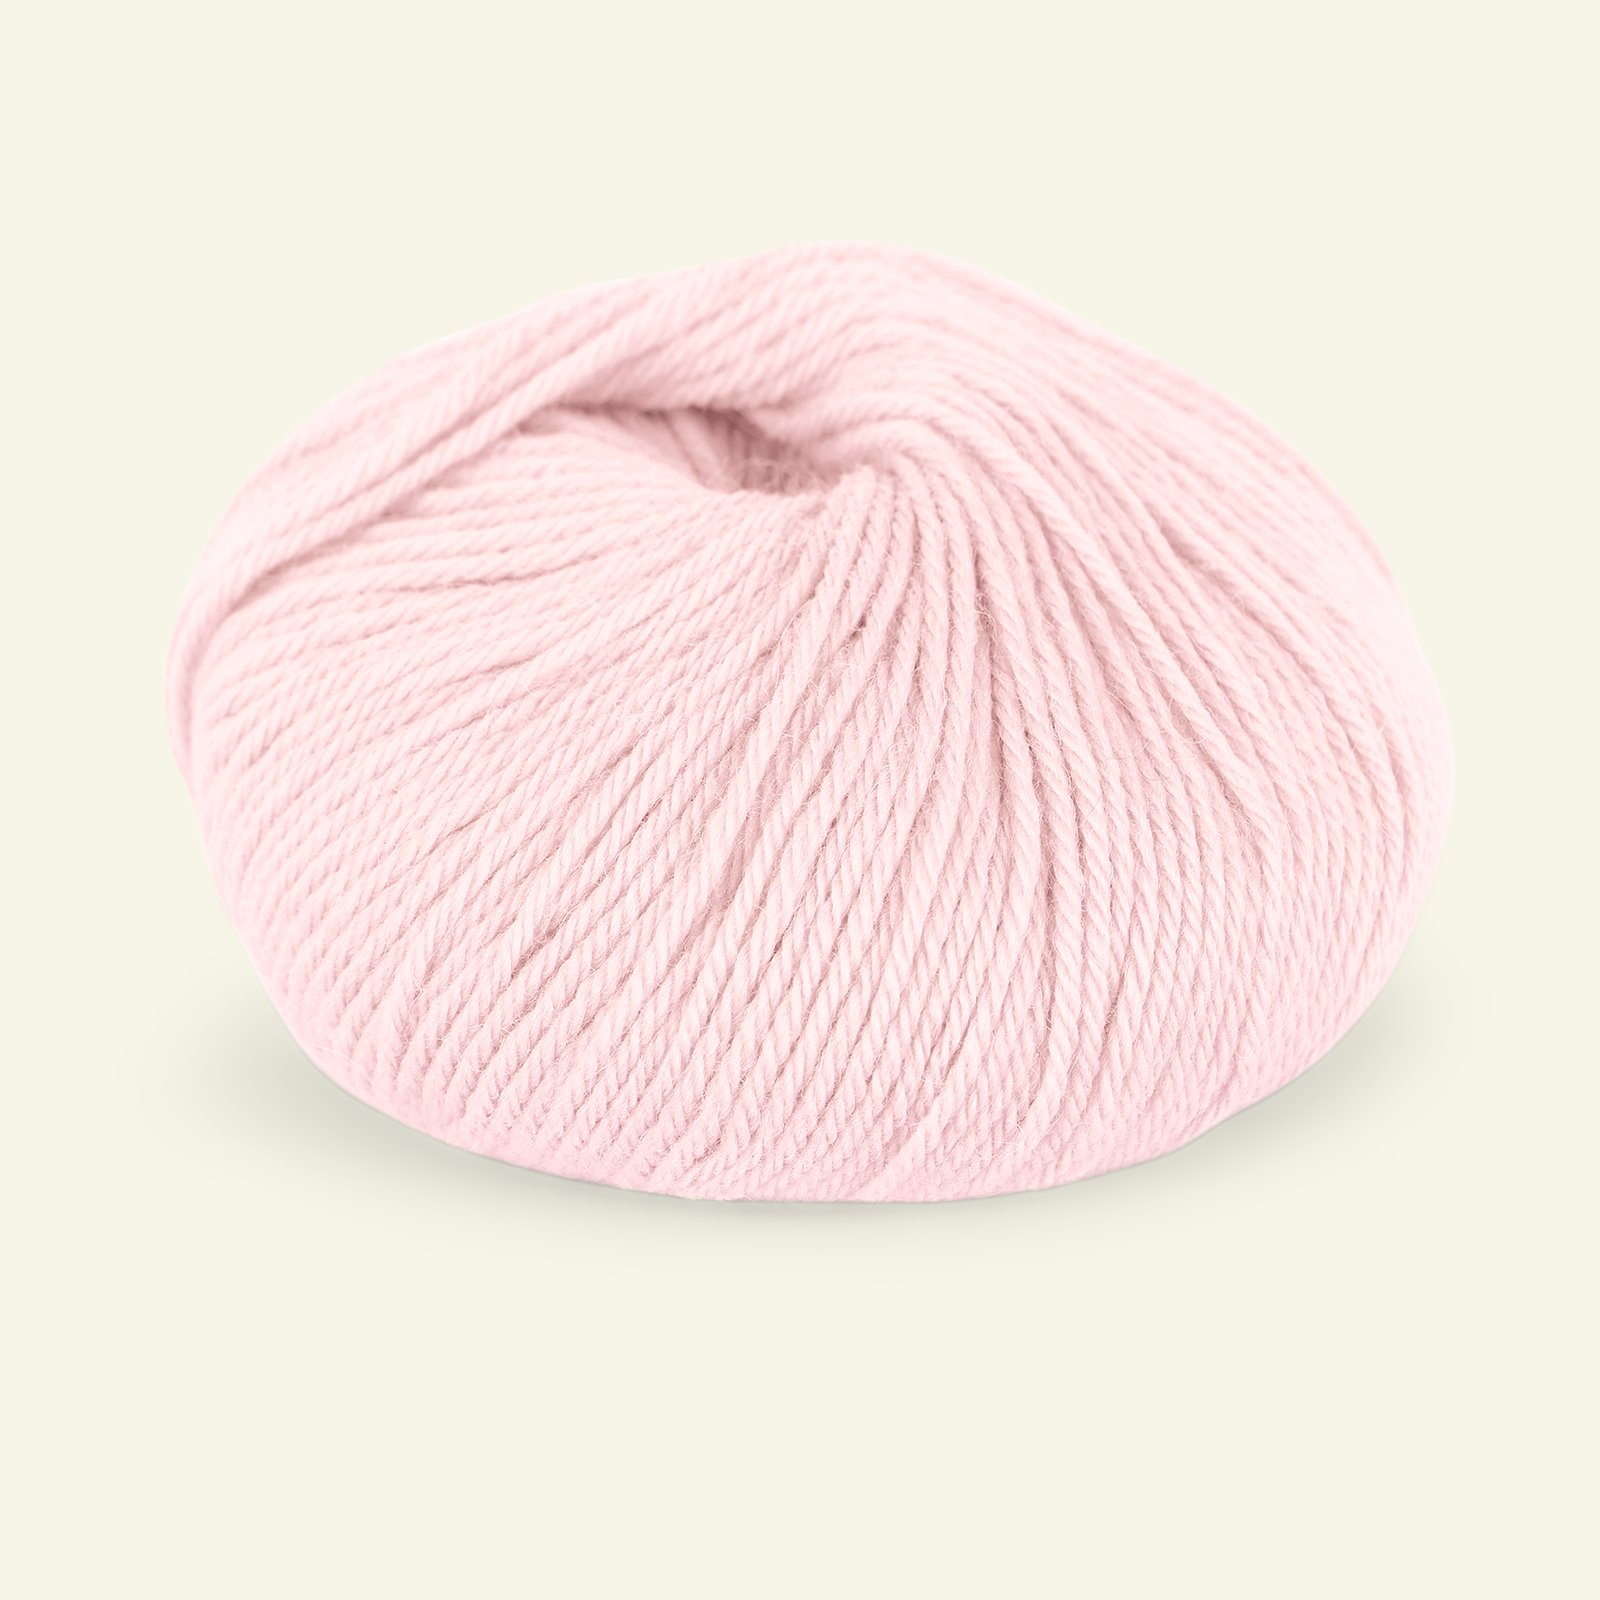 Du Store Alpakka, alpakka merino blandingsgarn "Sterk", lys rosa (910) 90000702_pack_b